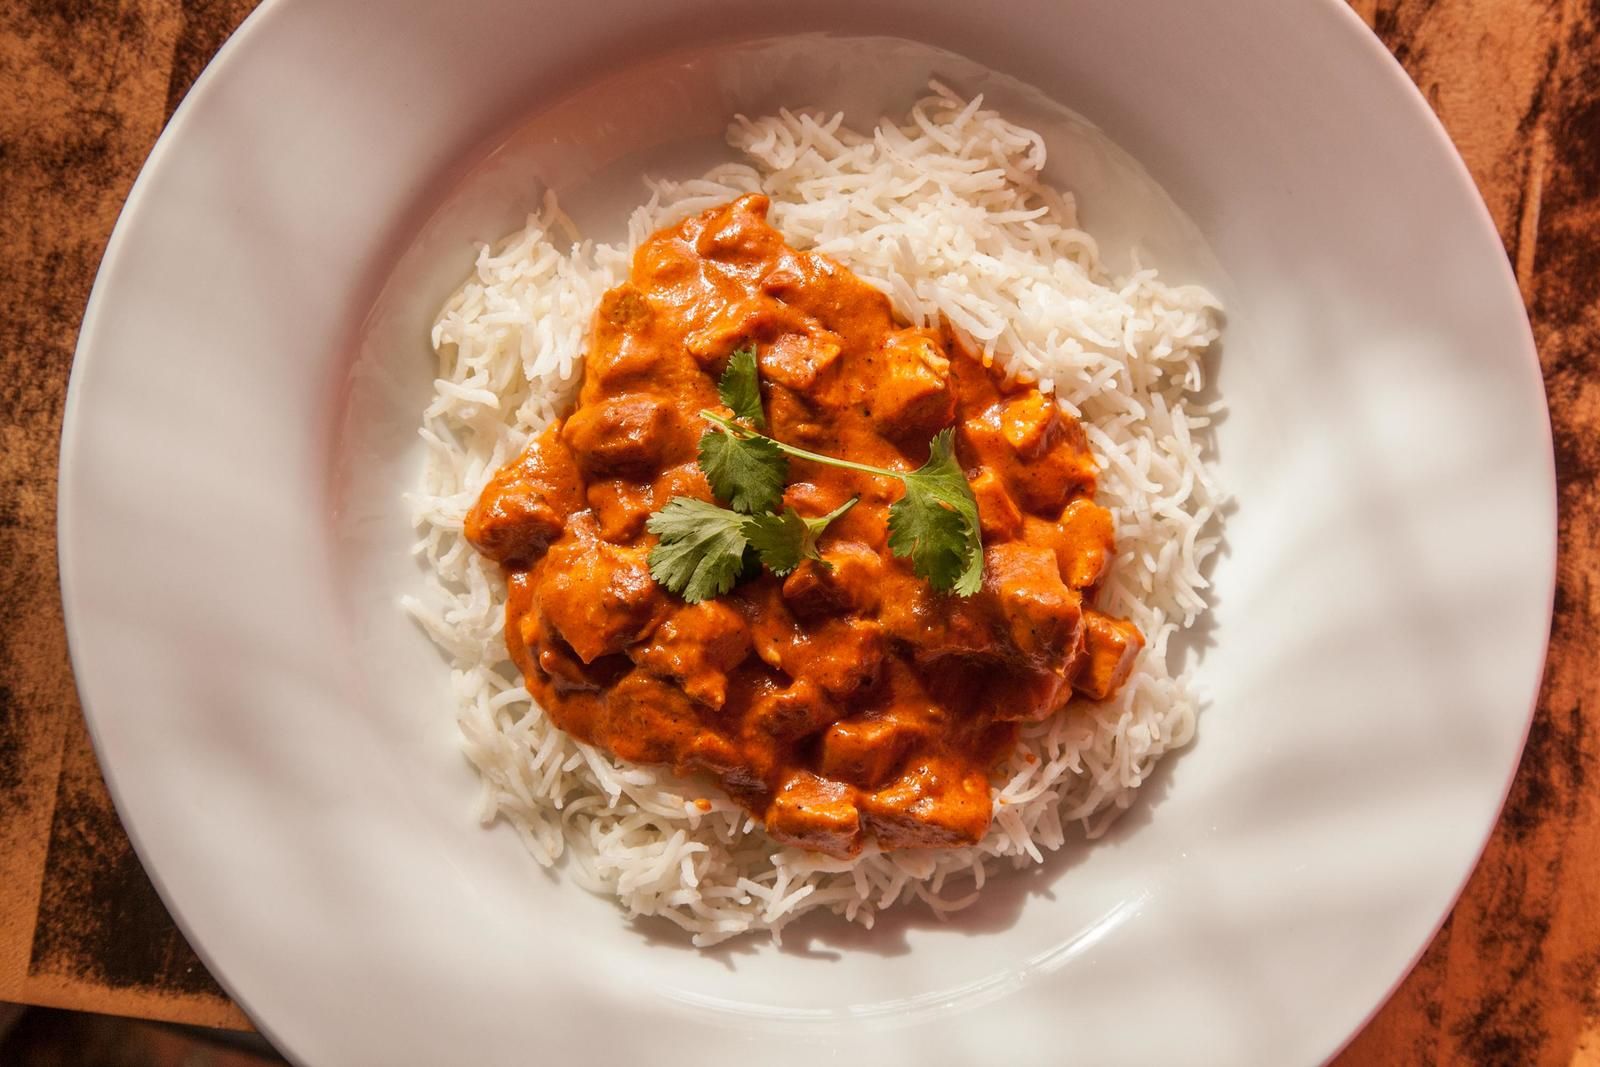 Tikka masala tarifi Masterchef’ten… Meşhur Hint yemeği tikka masala yemeğinin tam ölçülü tarifi